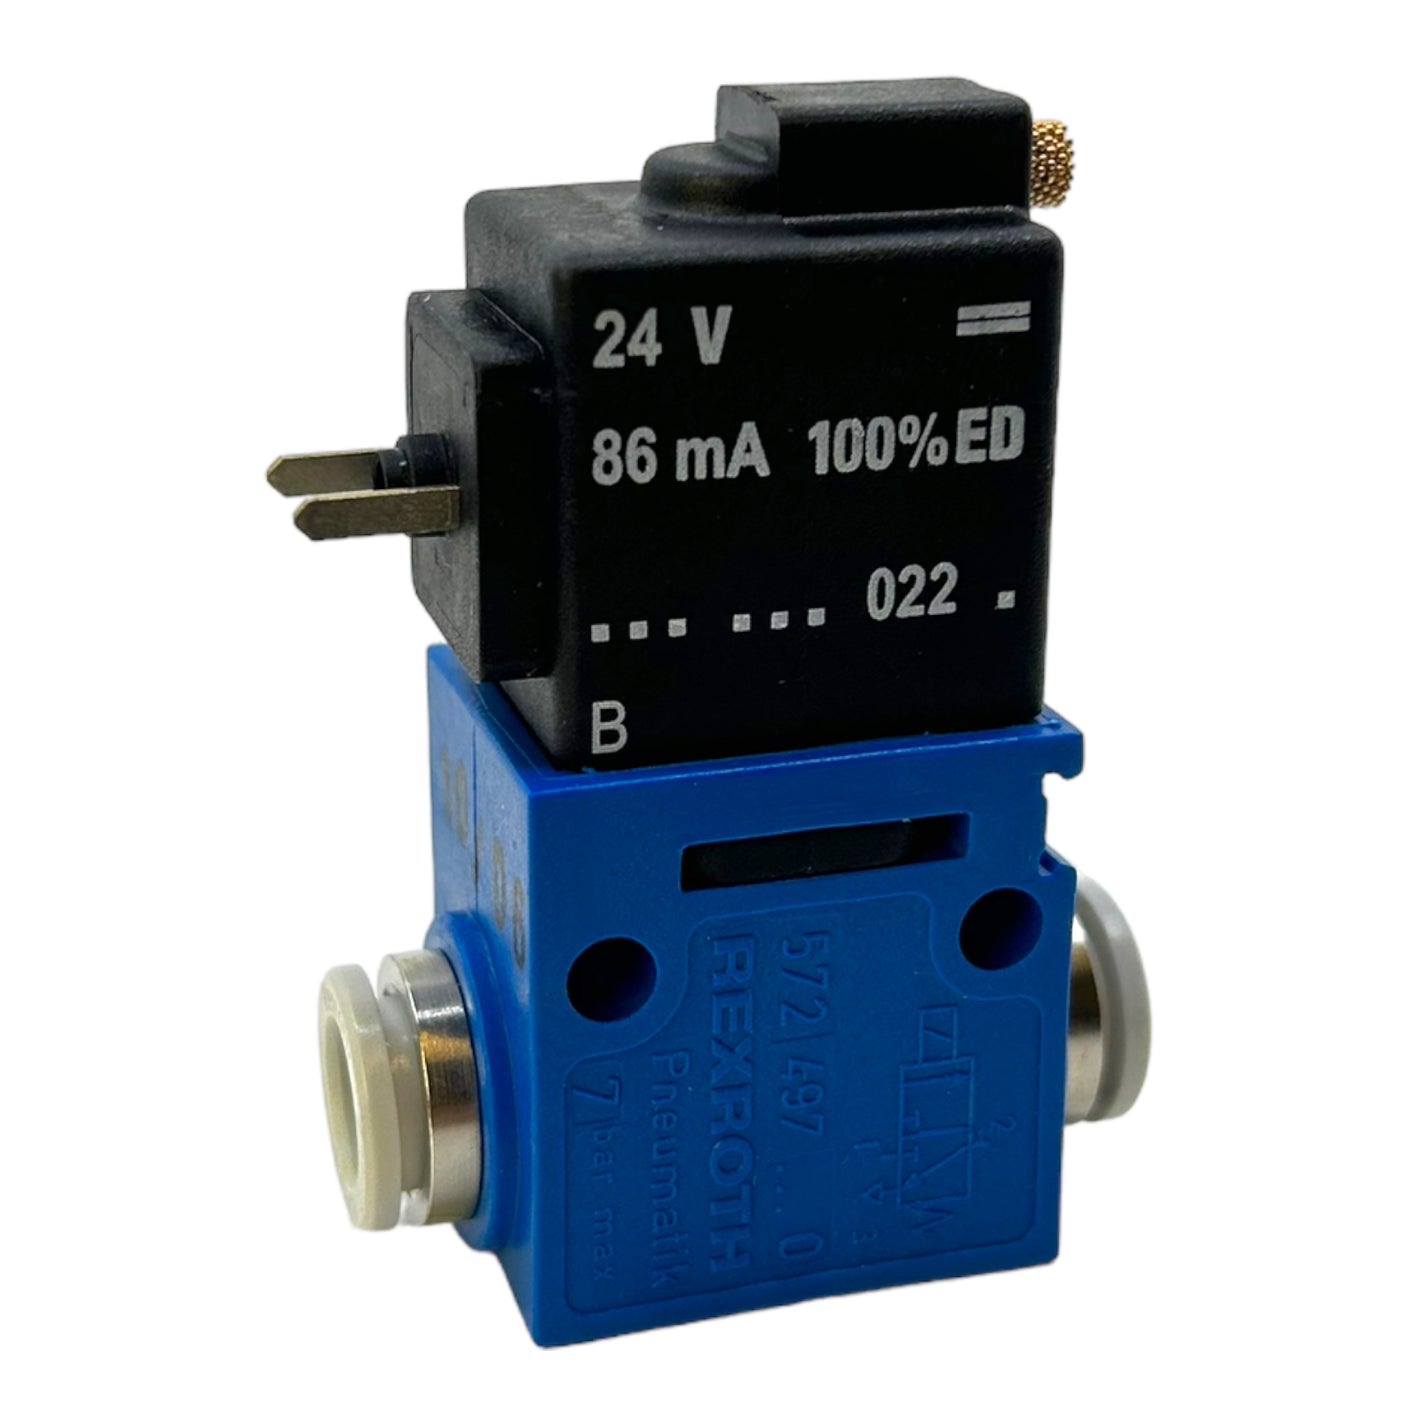 Rexroth 5724970220 Pneumatic solenoid valve 24V 86mA valve 